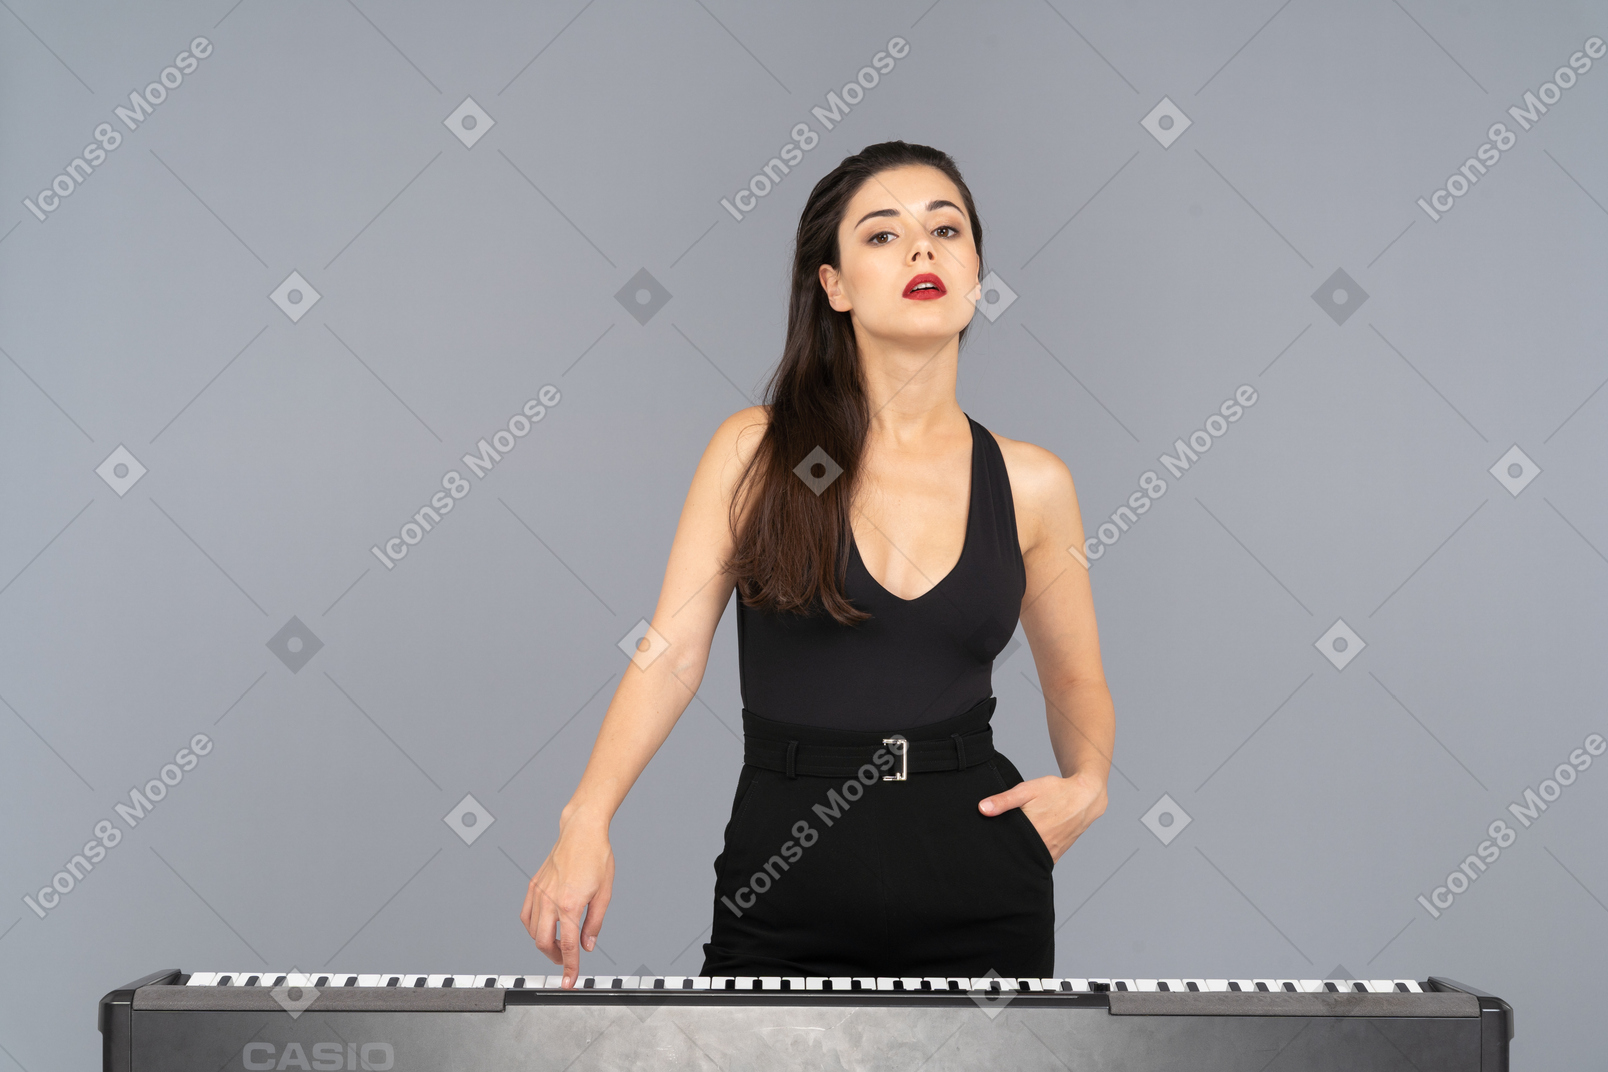 Vorderansicht einer jungen dame im schwarzen kleid, die die taste eines klaviers drückt